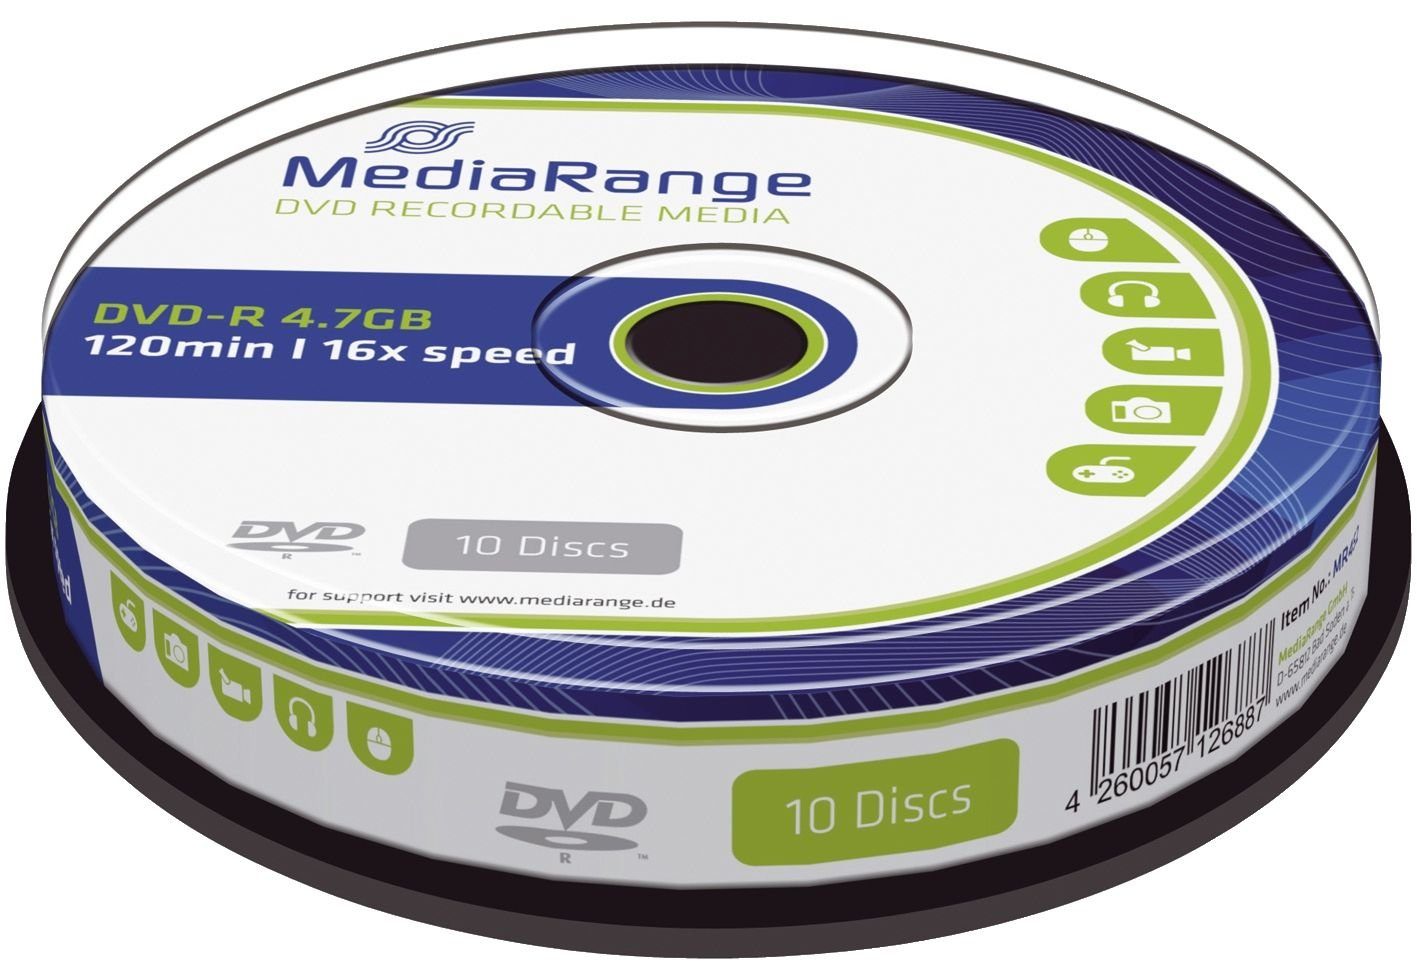 Mediarange Handgelenkstütze MediaRange DVD-R 4,7GB 10pcs Spindel 16x